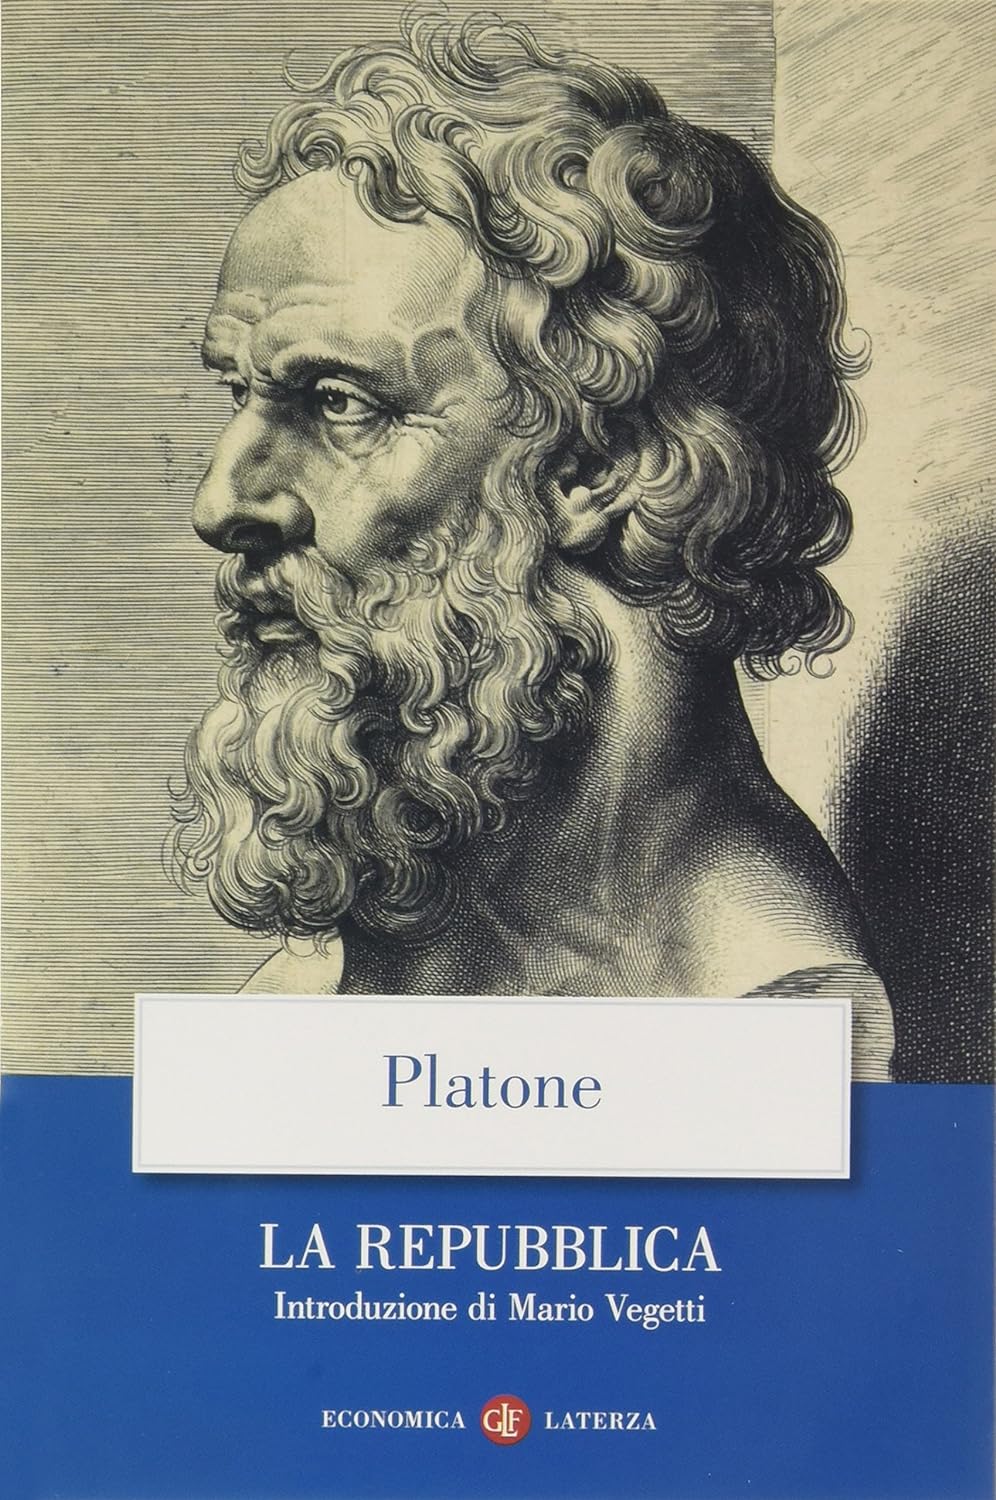 La repubblica di Platone